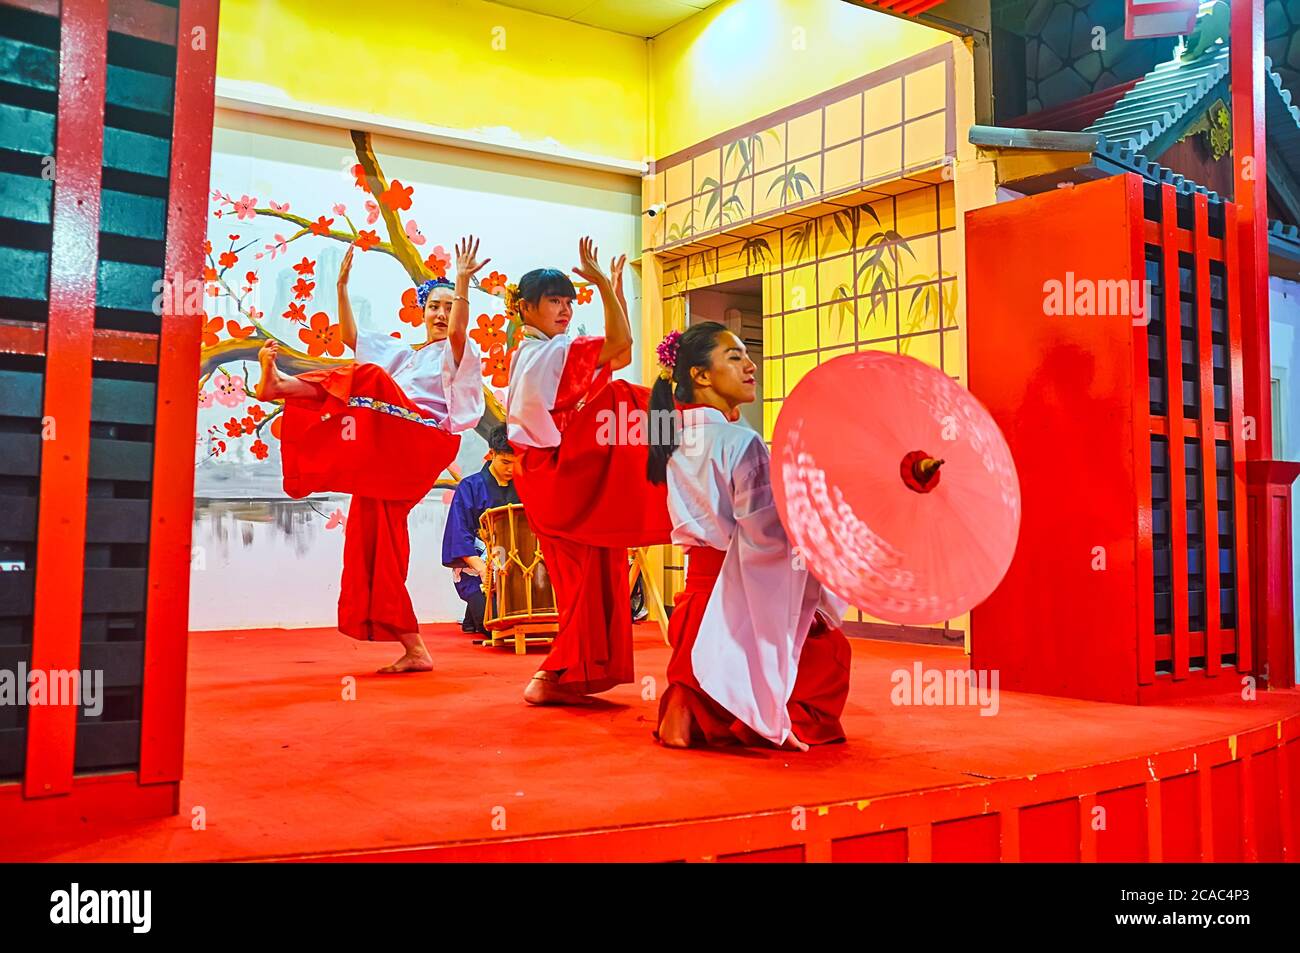 DUBAI, Emirati Arabi Uniti - 5 MARZO 2020: Gli artisti, vestiti con costumi nazionali, rappresentano la danza giapponese sul palco del Japan Pavilion nel Global Village Dubai Foto Stock